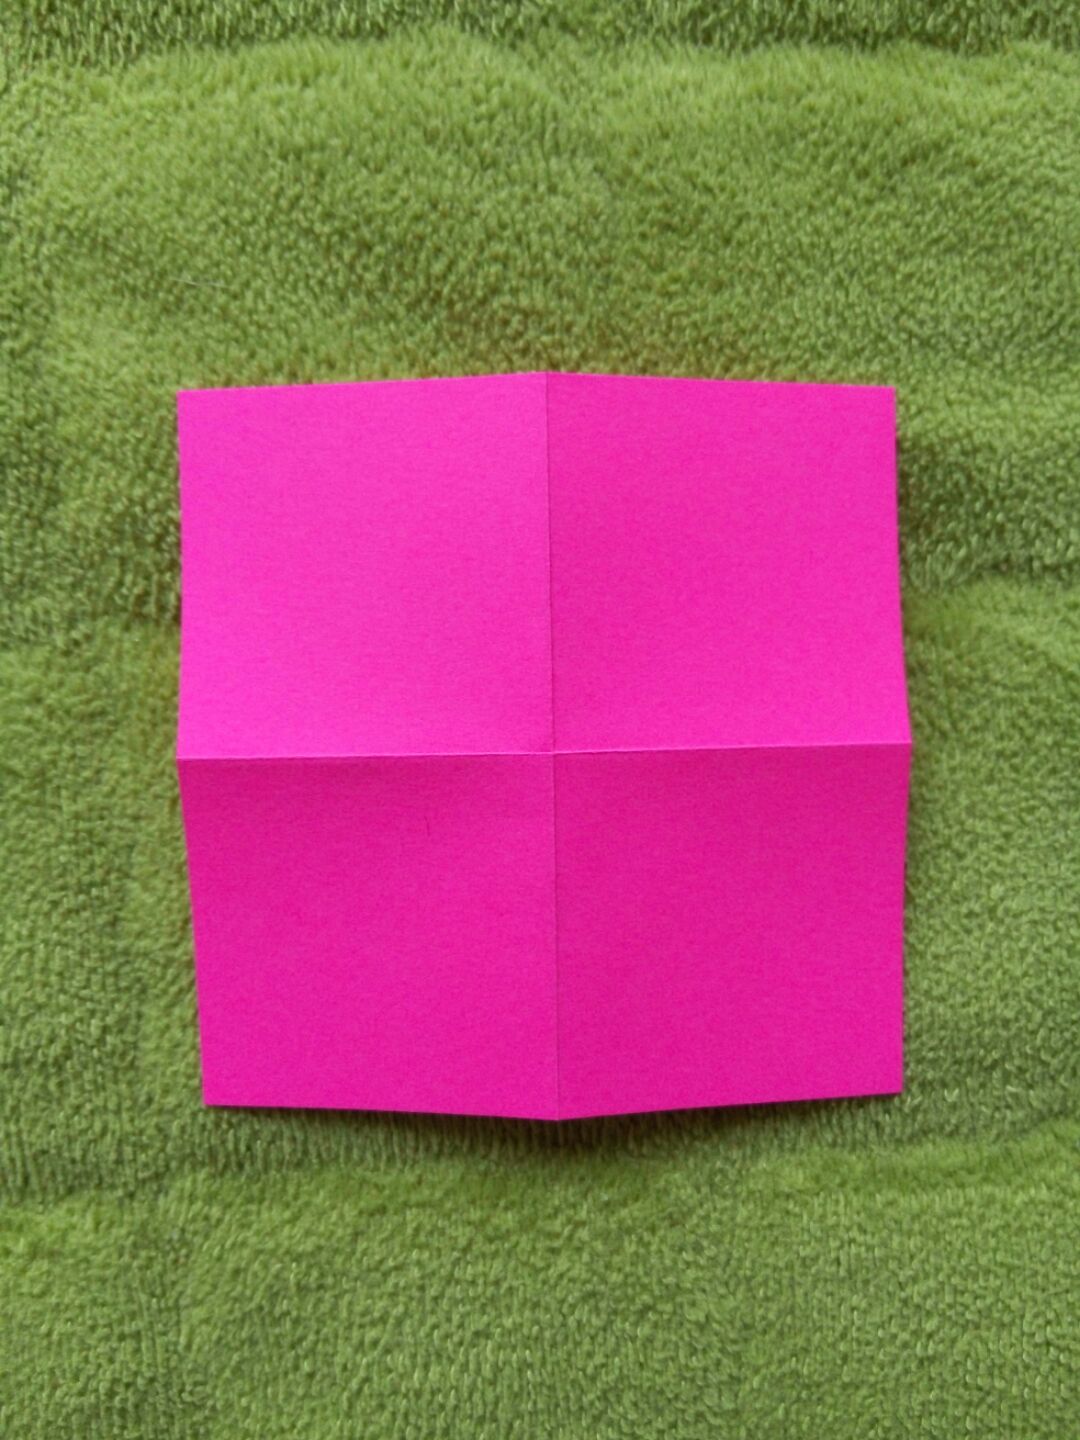 简单折纸大全图解 百合折纸方法